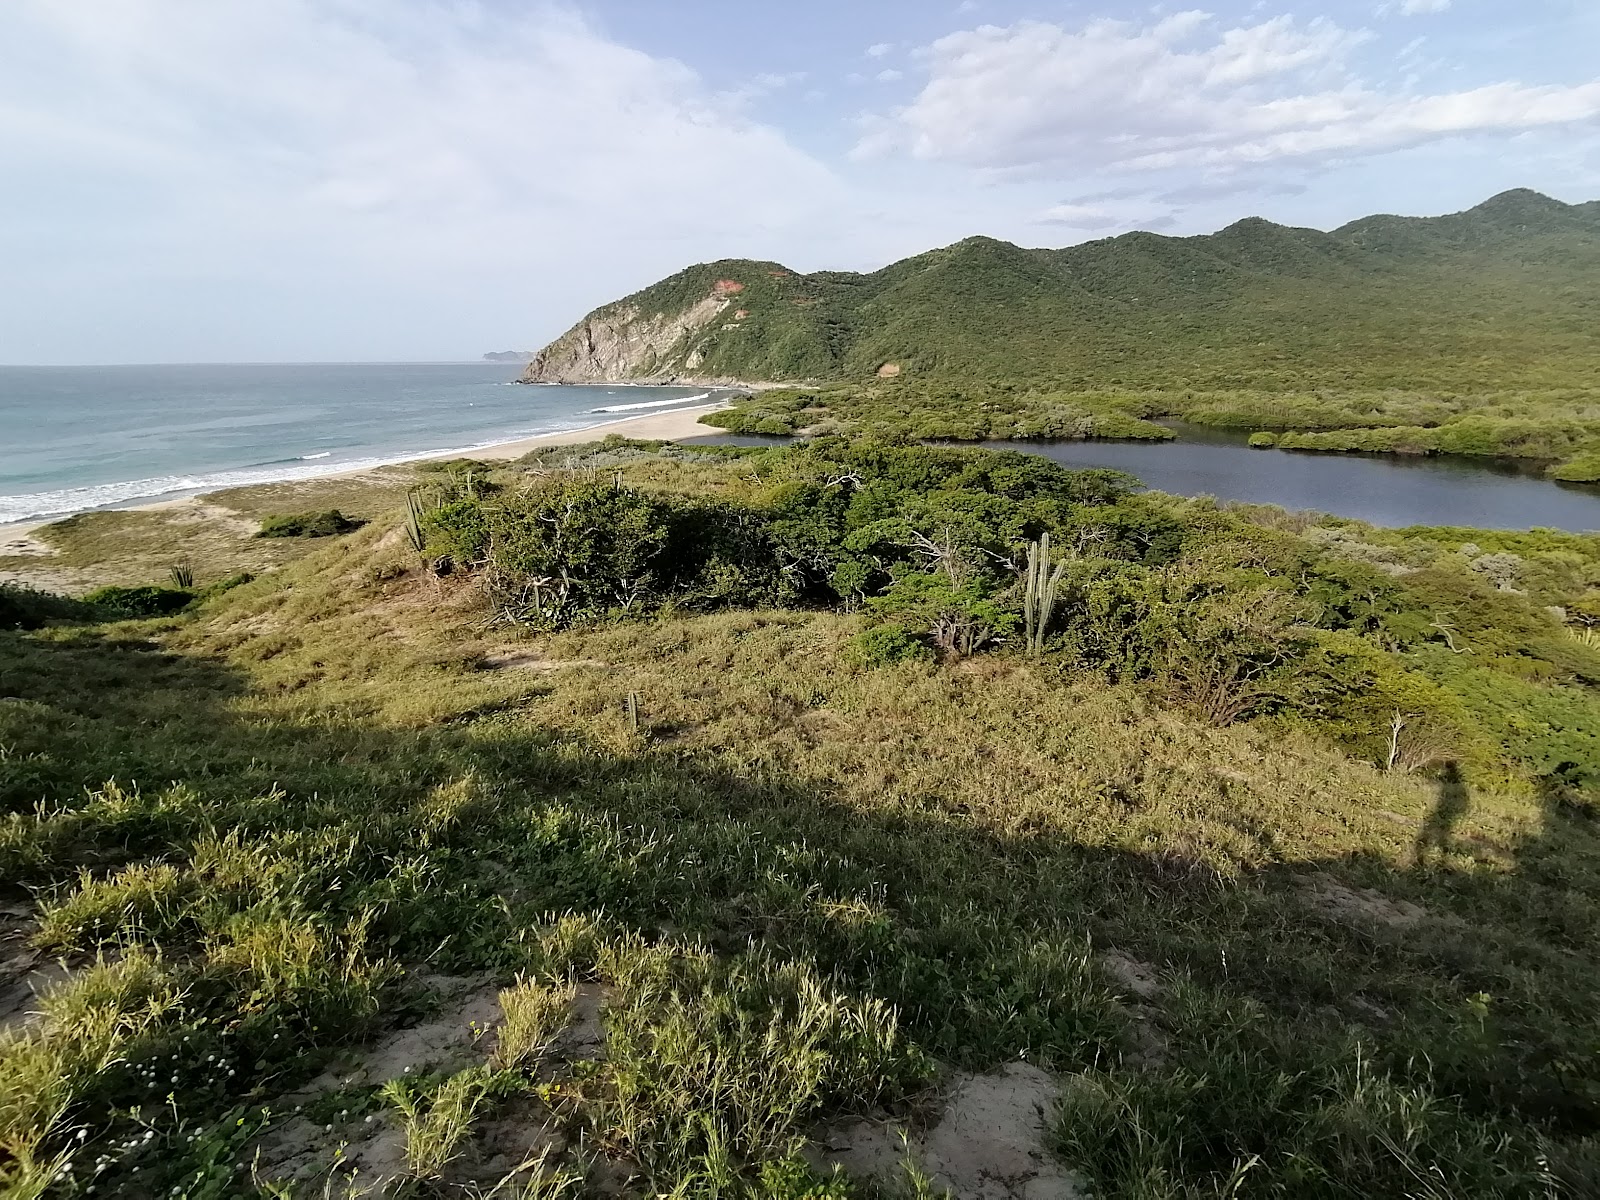 Fotografija Escondida beach nahaja se v naravnem okolju